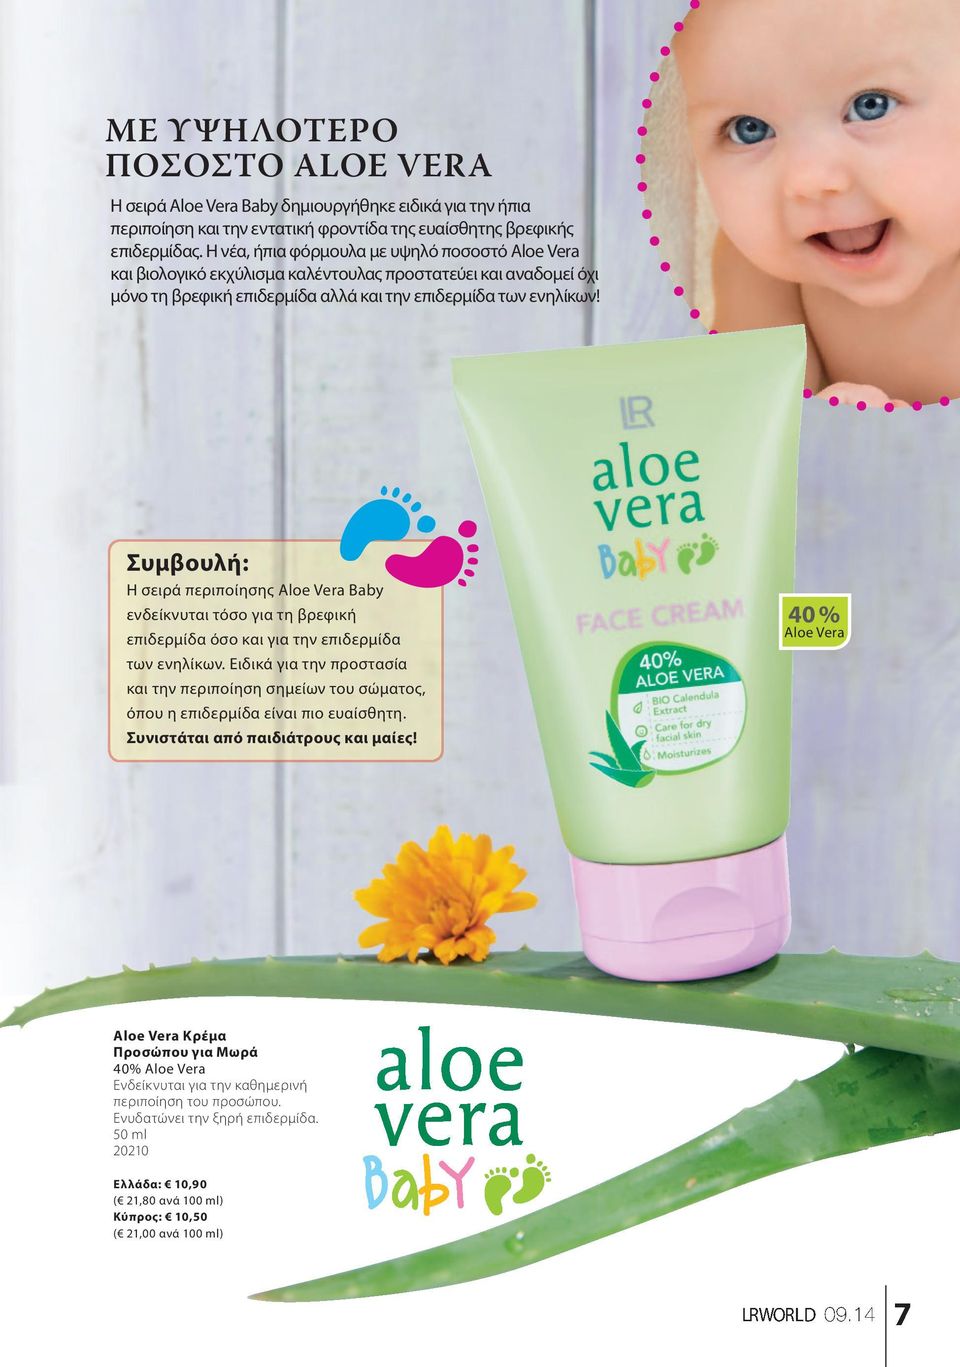 Συμβουλή: Η σειρά περιποίησης Aloe Vera Baby ενδείκνυται τόσο για τη βρεφική επιδερμίδα όσο και για την επιδερμίδα των ενηλίκων.